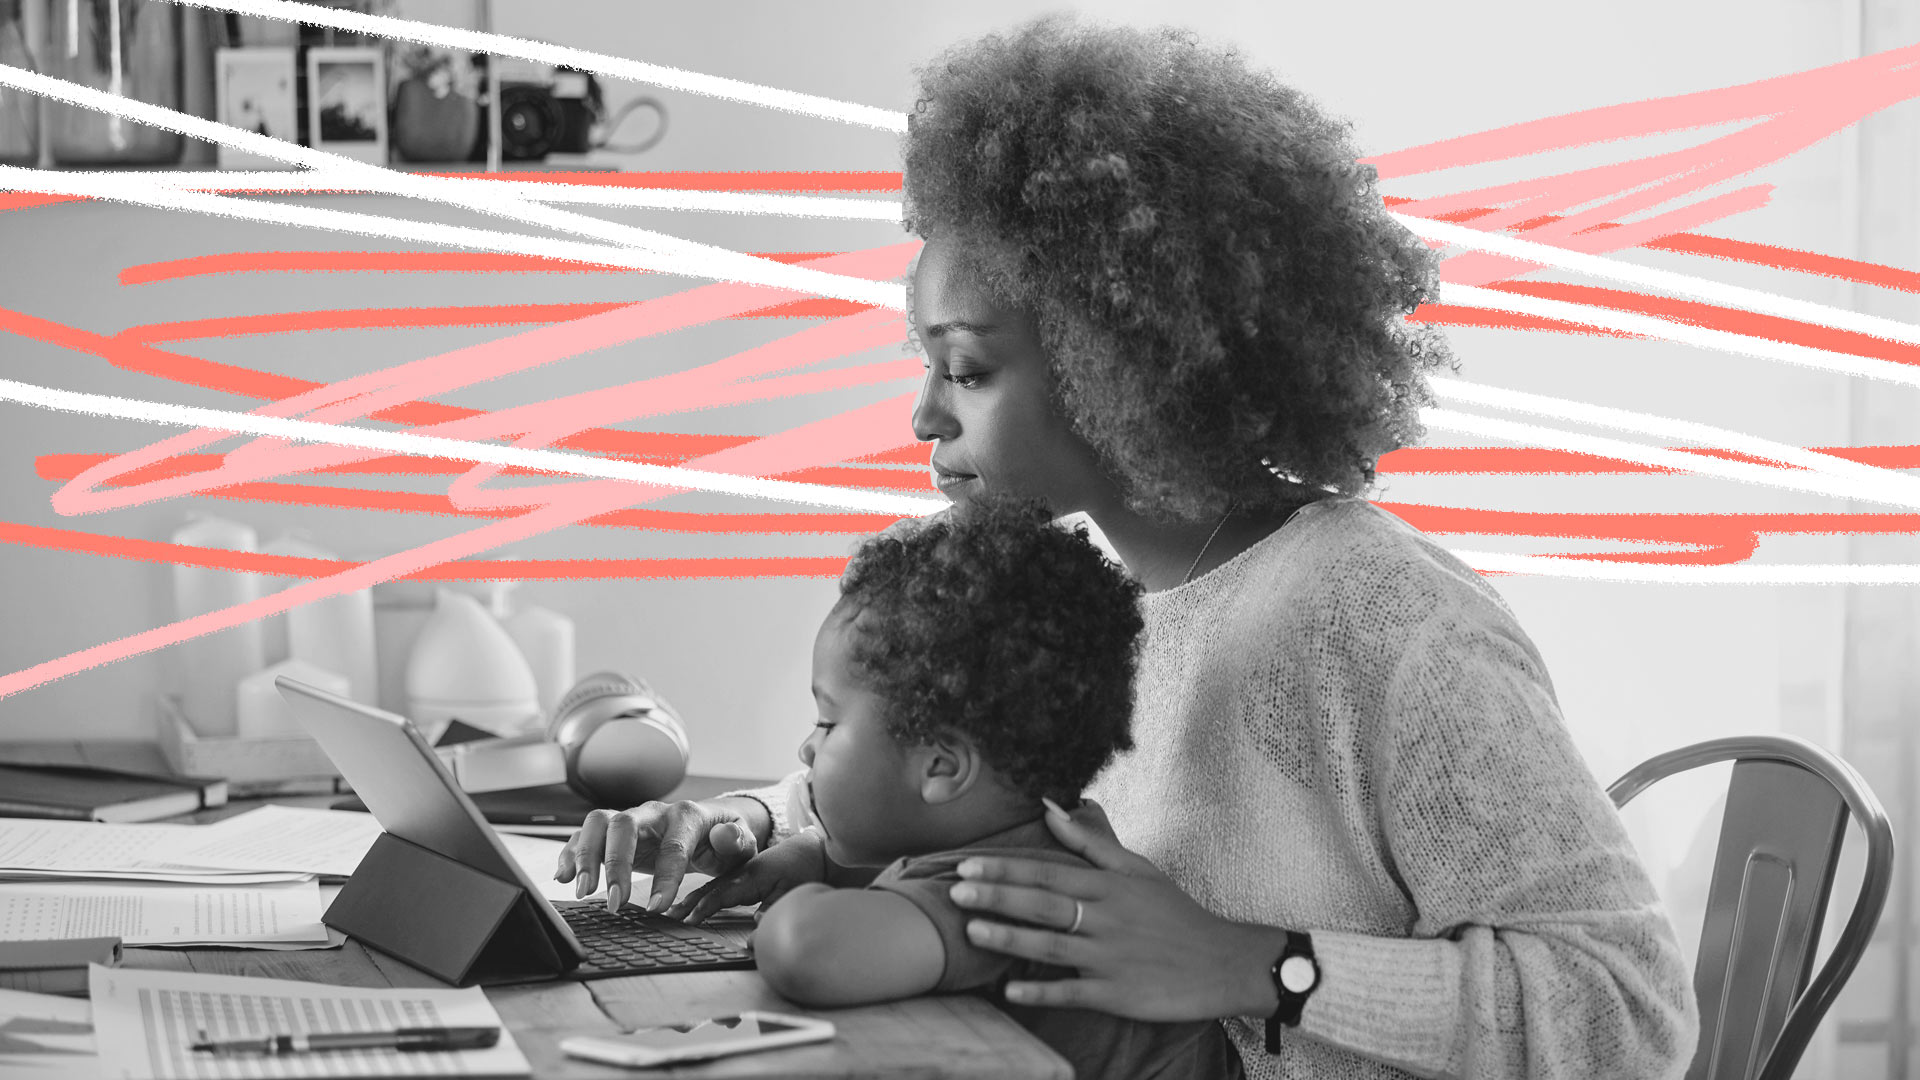 Mães solo e carreira: foto em preto e branco de uma mãe e filho, ambos negros. Ela está trabalhando em frente ao computador enquanto tem o bebê no colo.